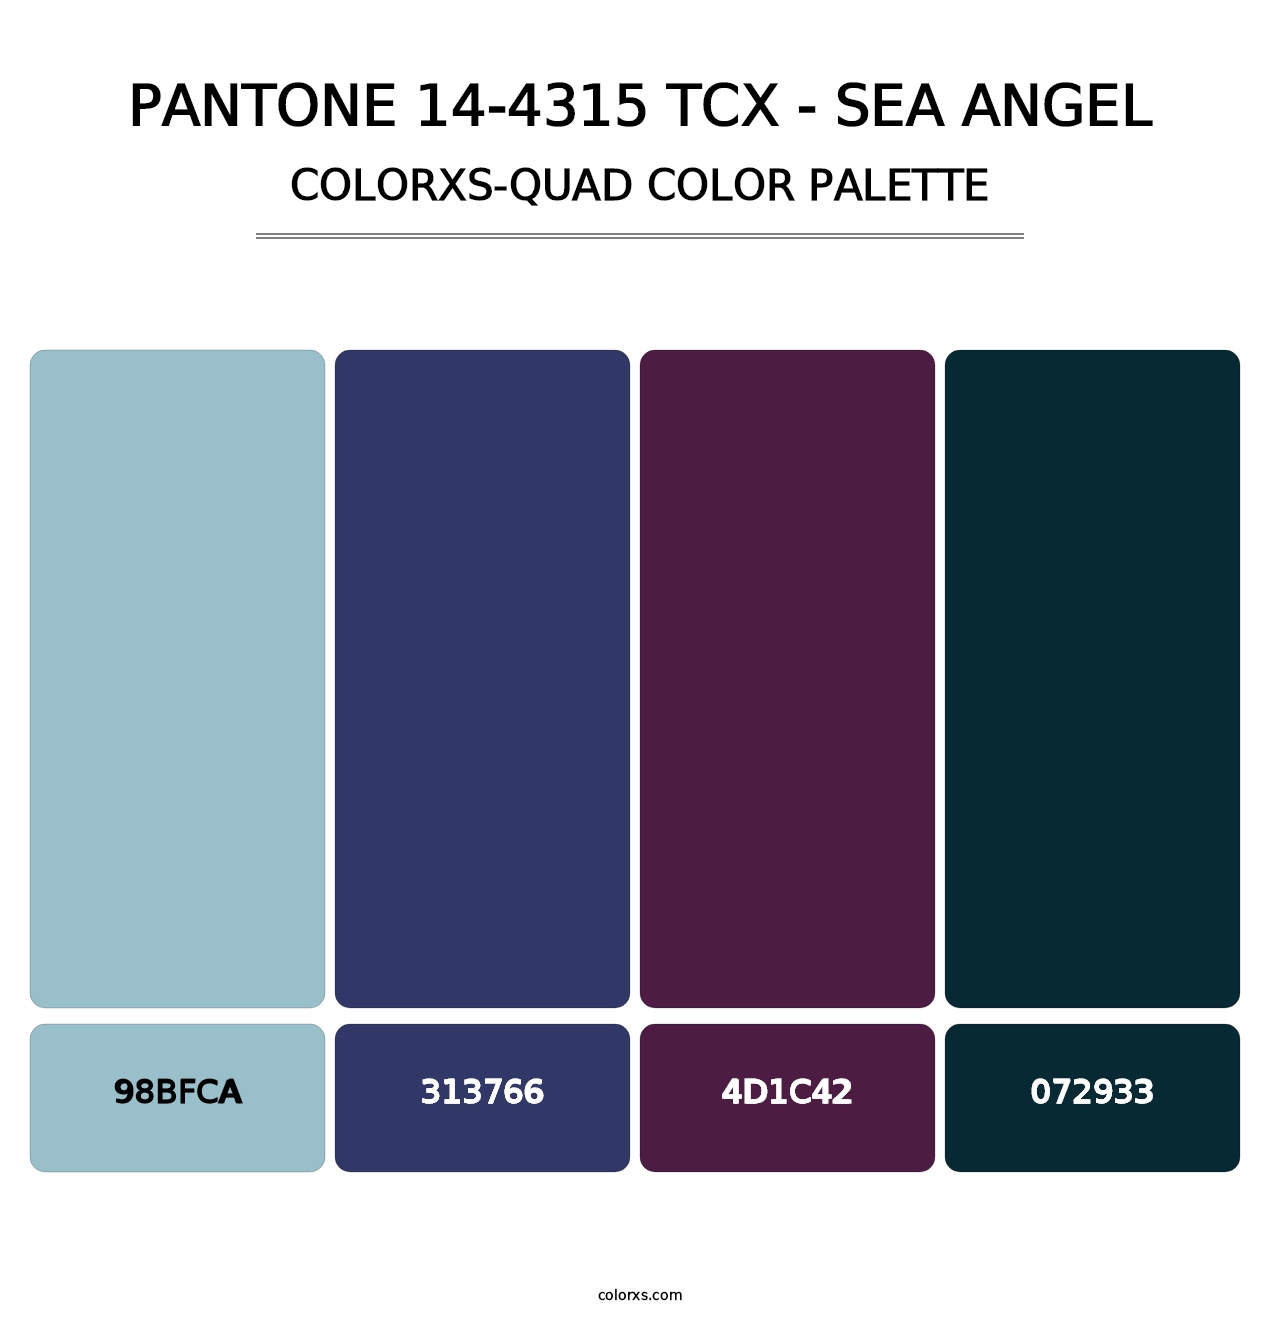 PANTONE 14-4315 TCX - Sea Angel - Colorxs Quad Palette